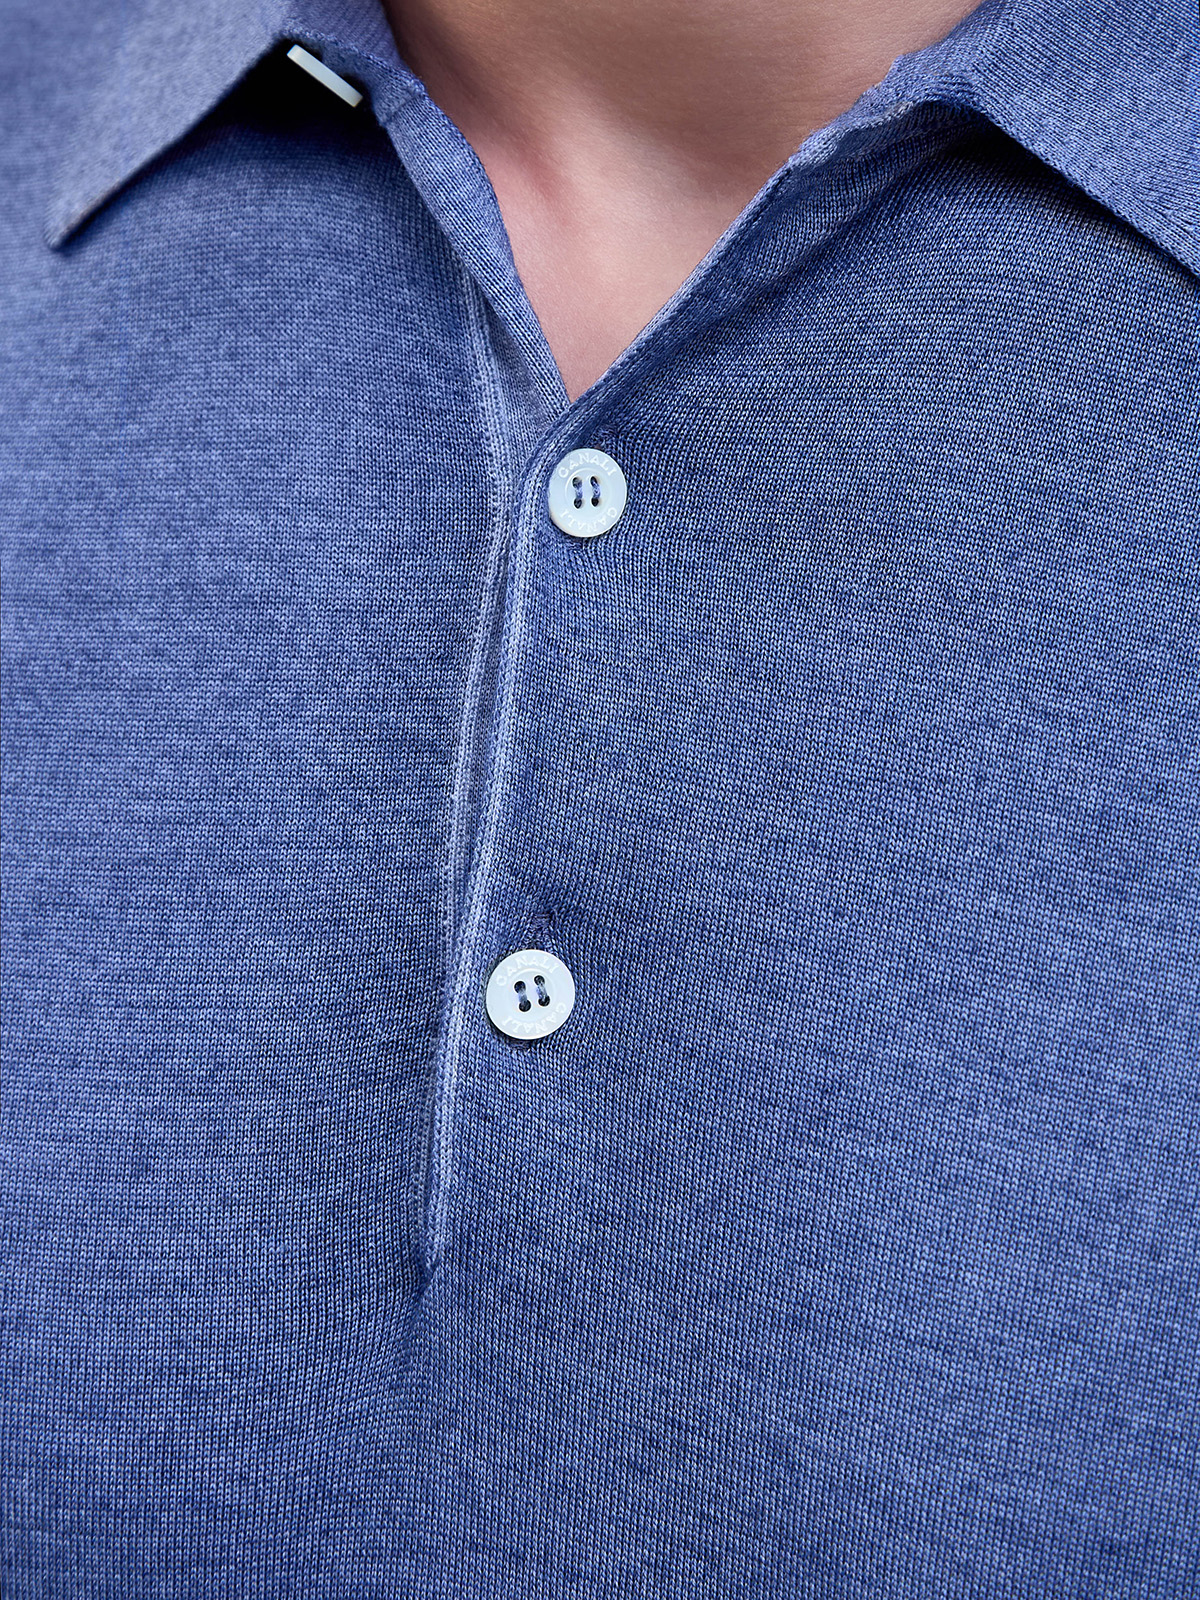 Джемпер из окрашенной вручную шерсти и шелка с воротом-поло CANALI, цвет синий, размер 50;52;54;56 - фото 5